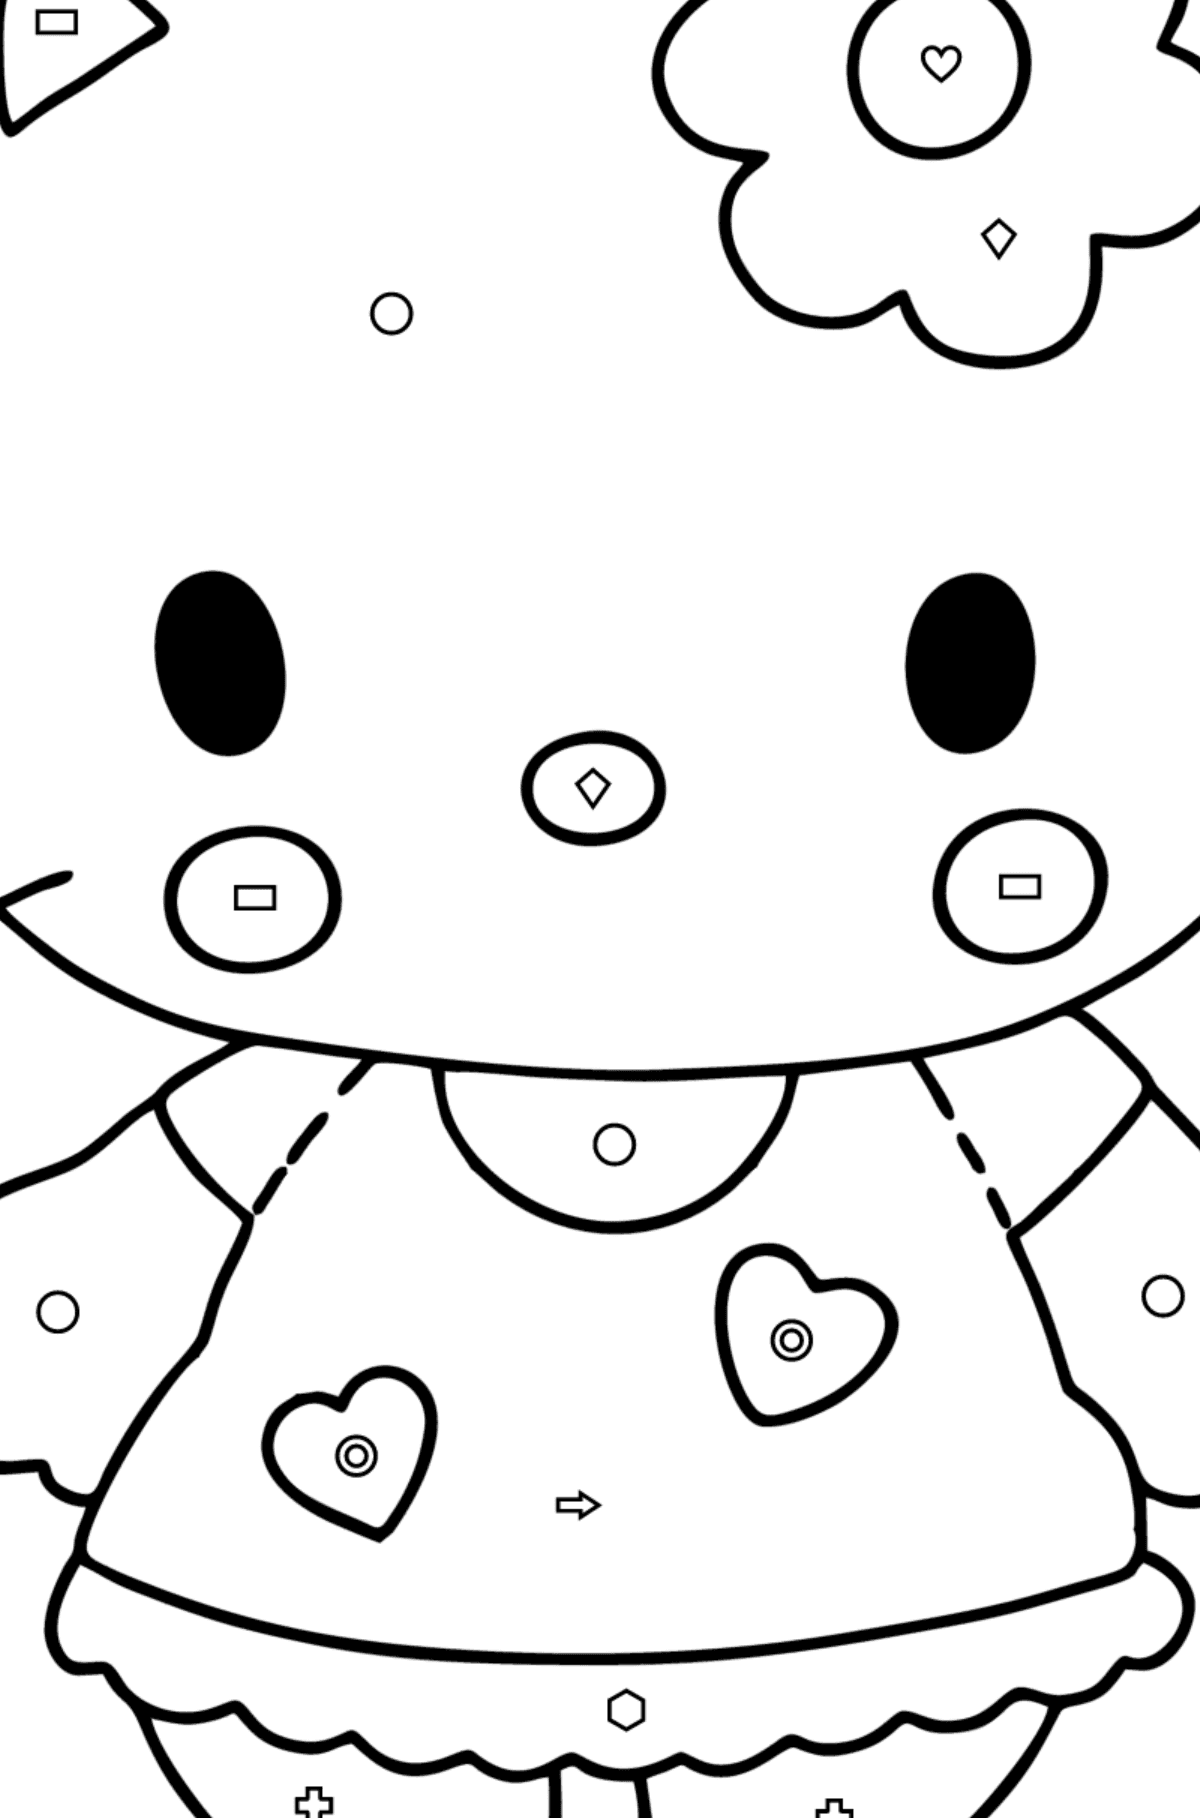 Boyama sayfası Hello Kitty - Geometrik Şekillerle Boyama çocuklar için